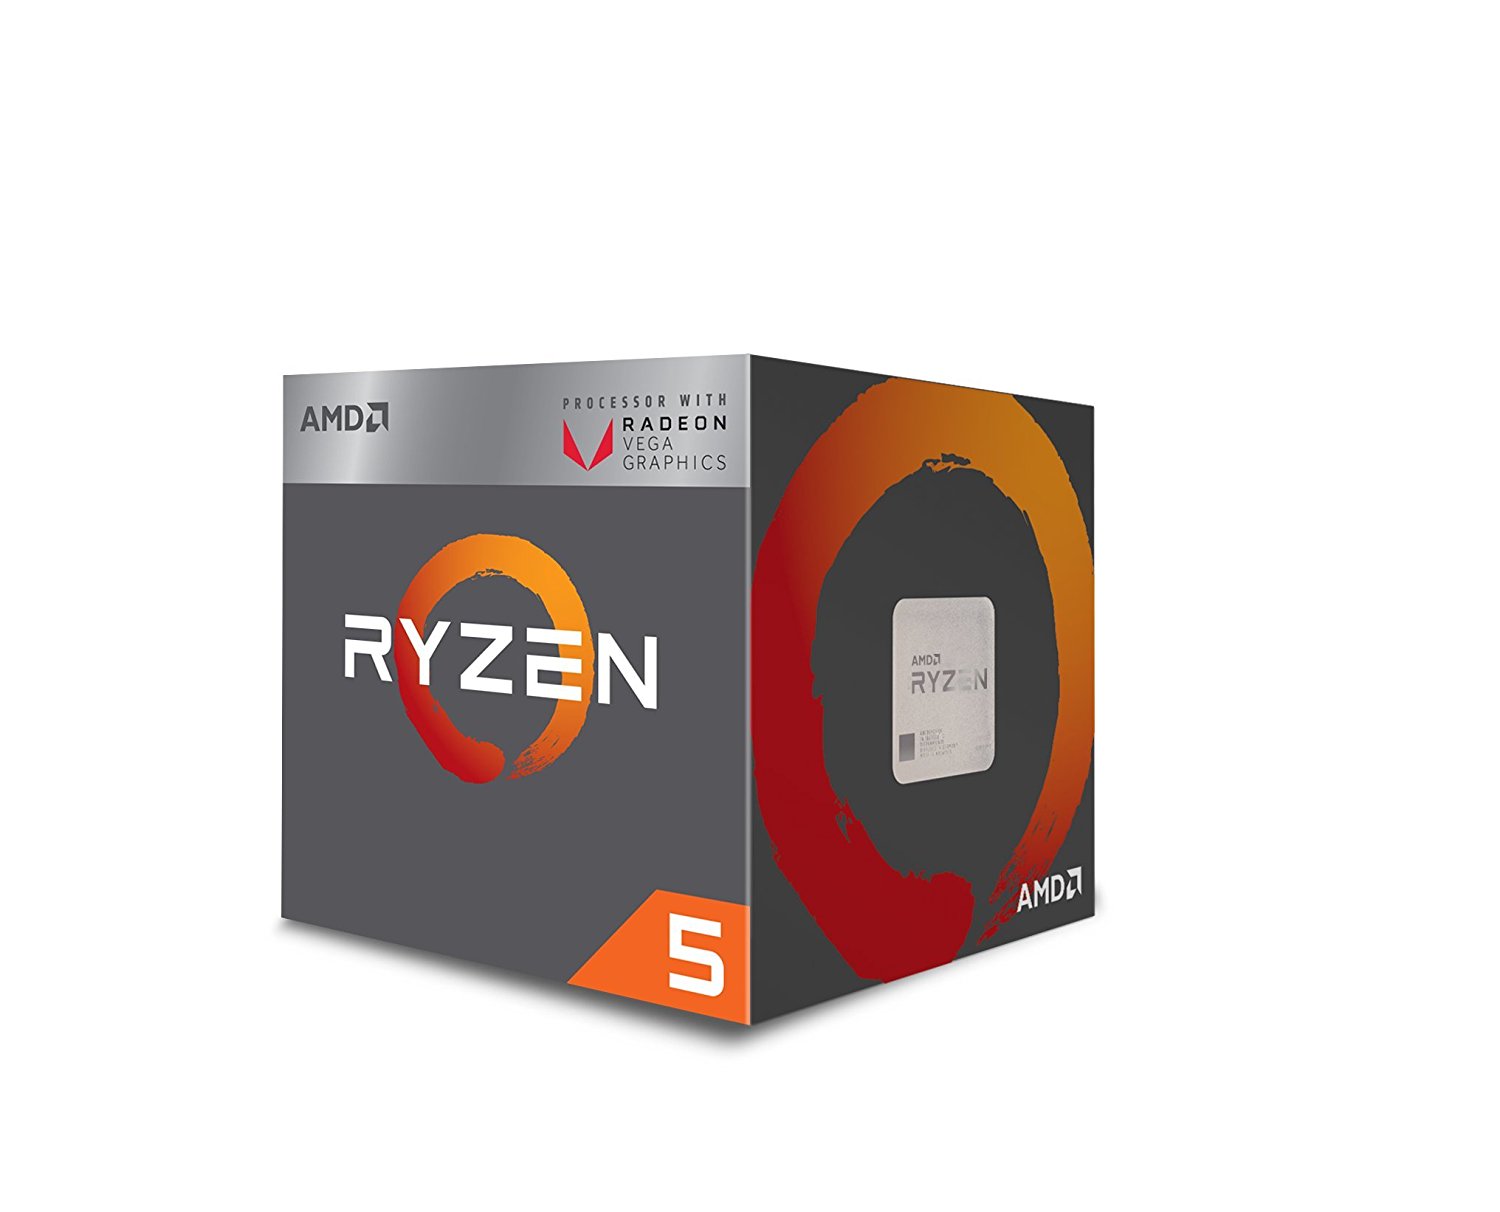 Immagine pubblicata in relazione al seguente contenuto: AMD lancia le APU Raven Ridge per desktop Ryzen 5 2400G e Ryzen 3 2200G | Nome immagine: news27852_Ryzen-5-2400G-Ryzen-3-2200G_5.jpg